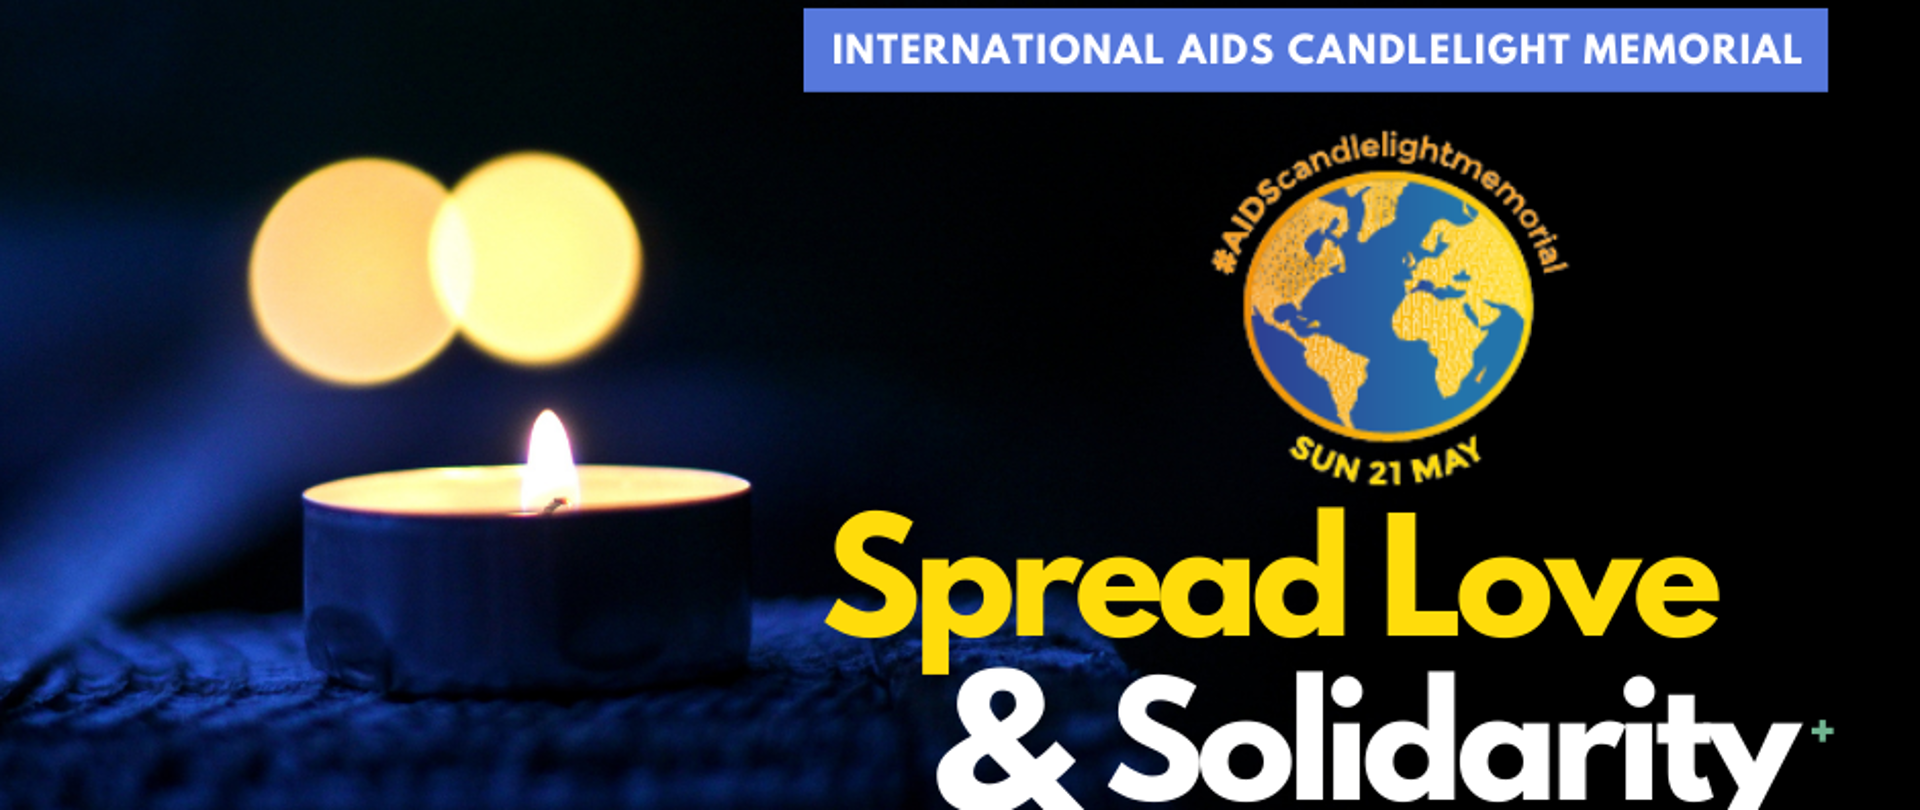 Międzynarodowy Dzień Pamięci o Zmarłych na AIDS – International AIDS Candlelight Memorial 21 maja 2023